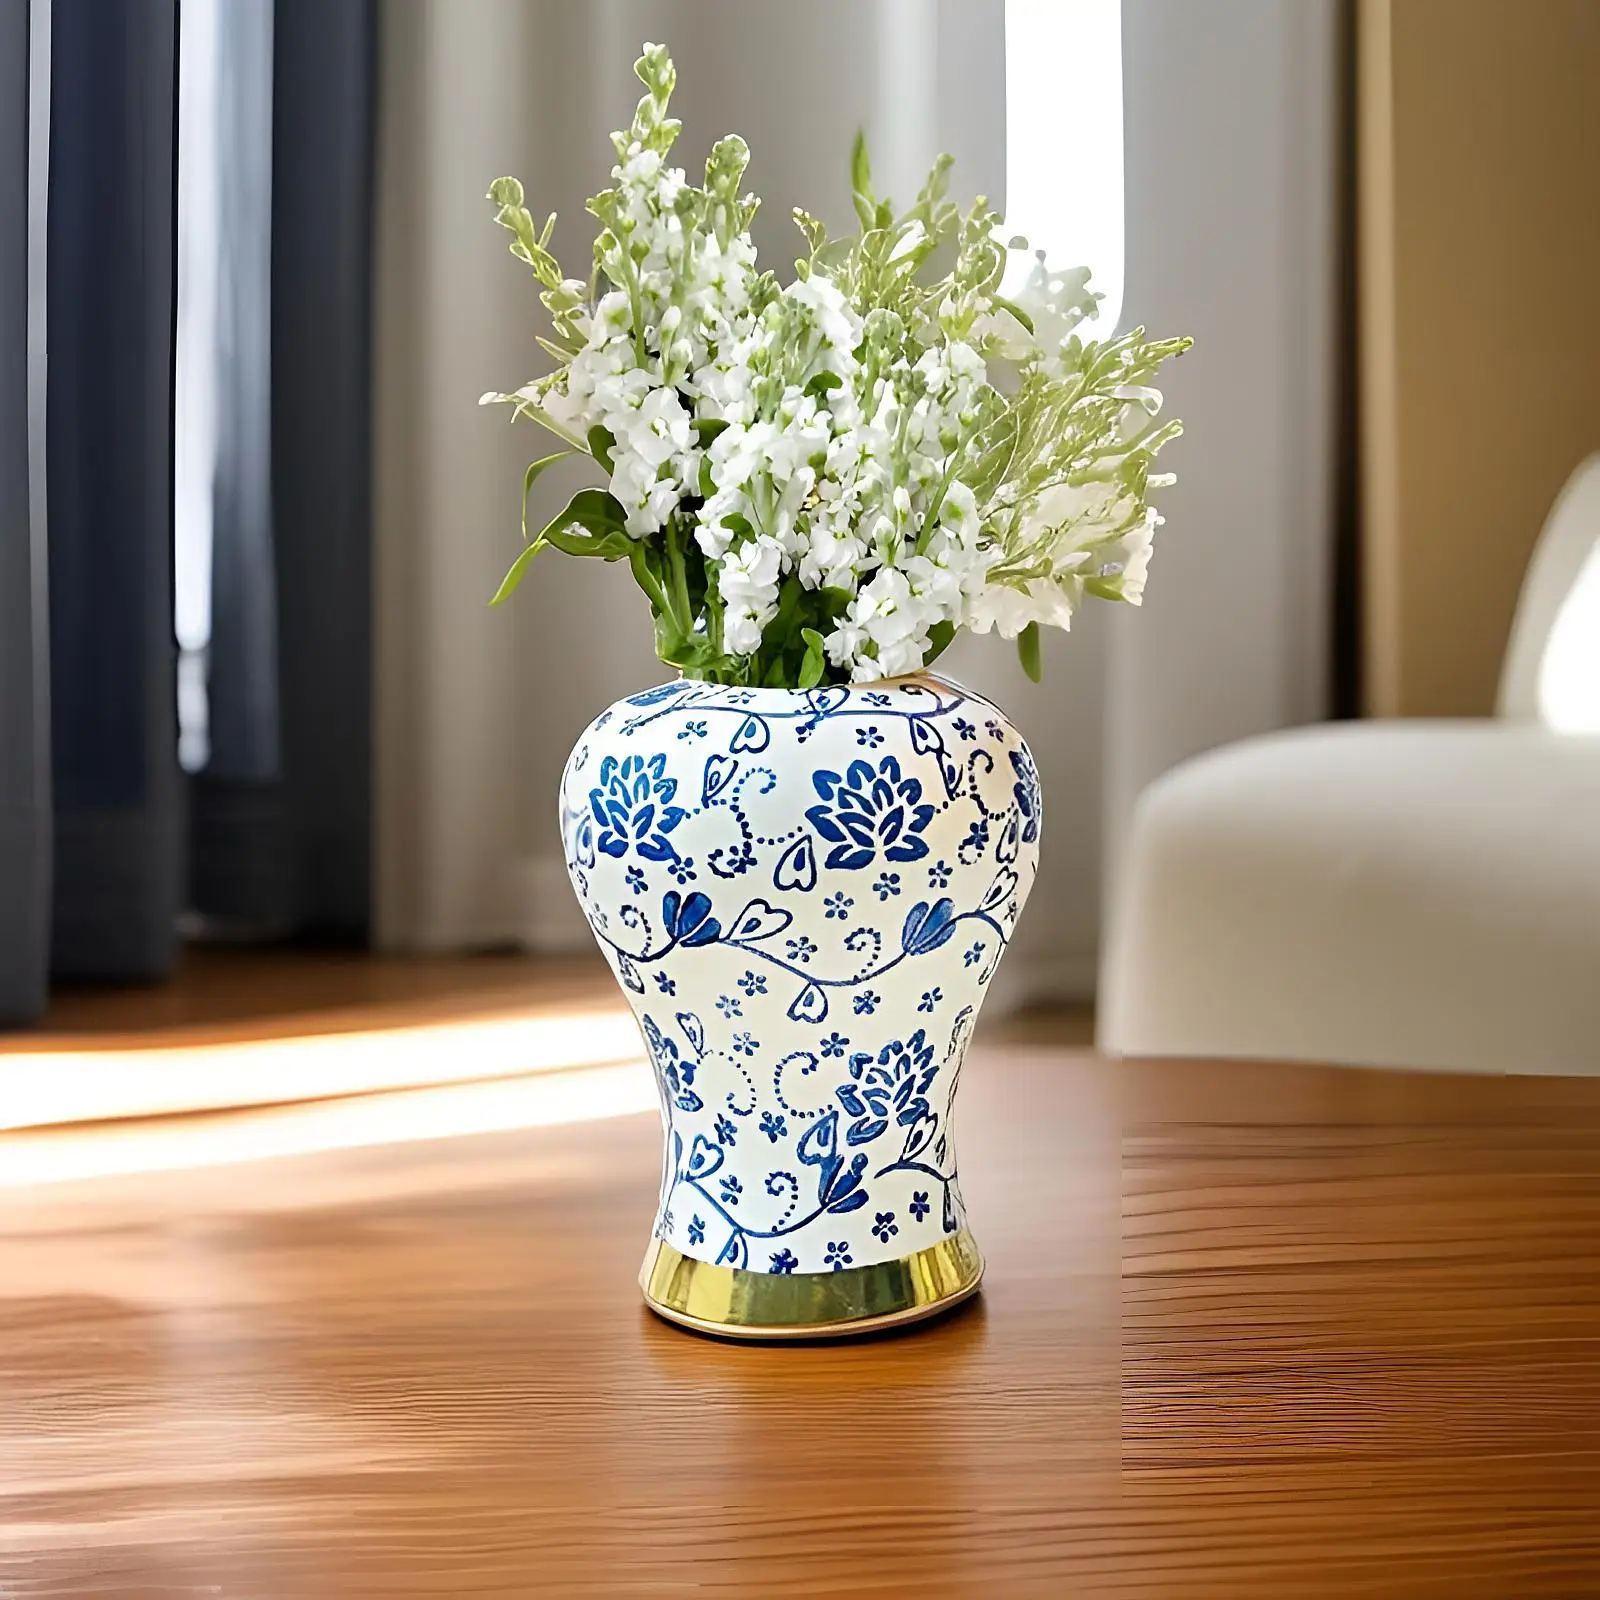 Blue and White Porcelain Ginger Jar Vintage Flower Arrangement Decorative Vase